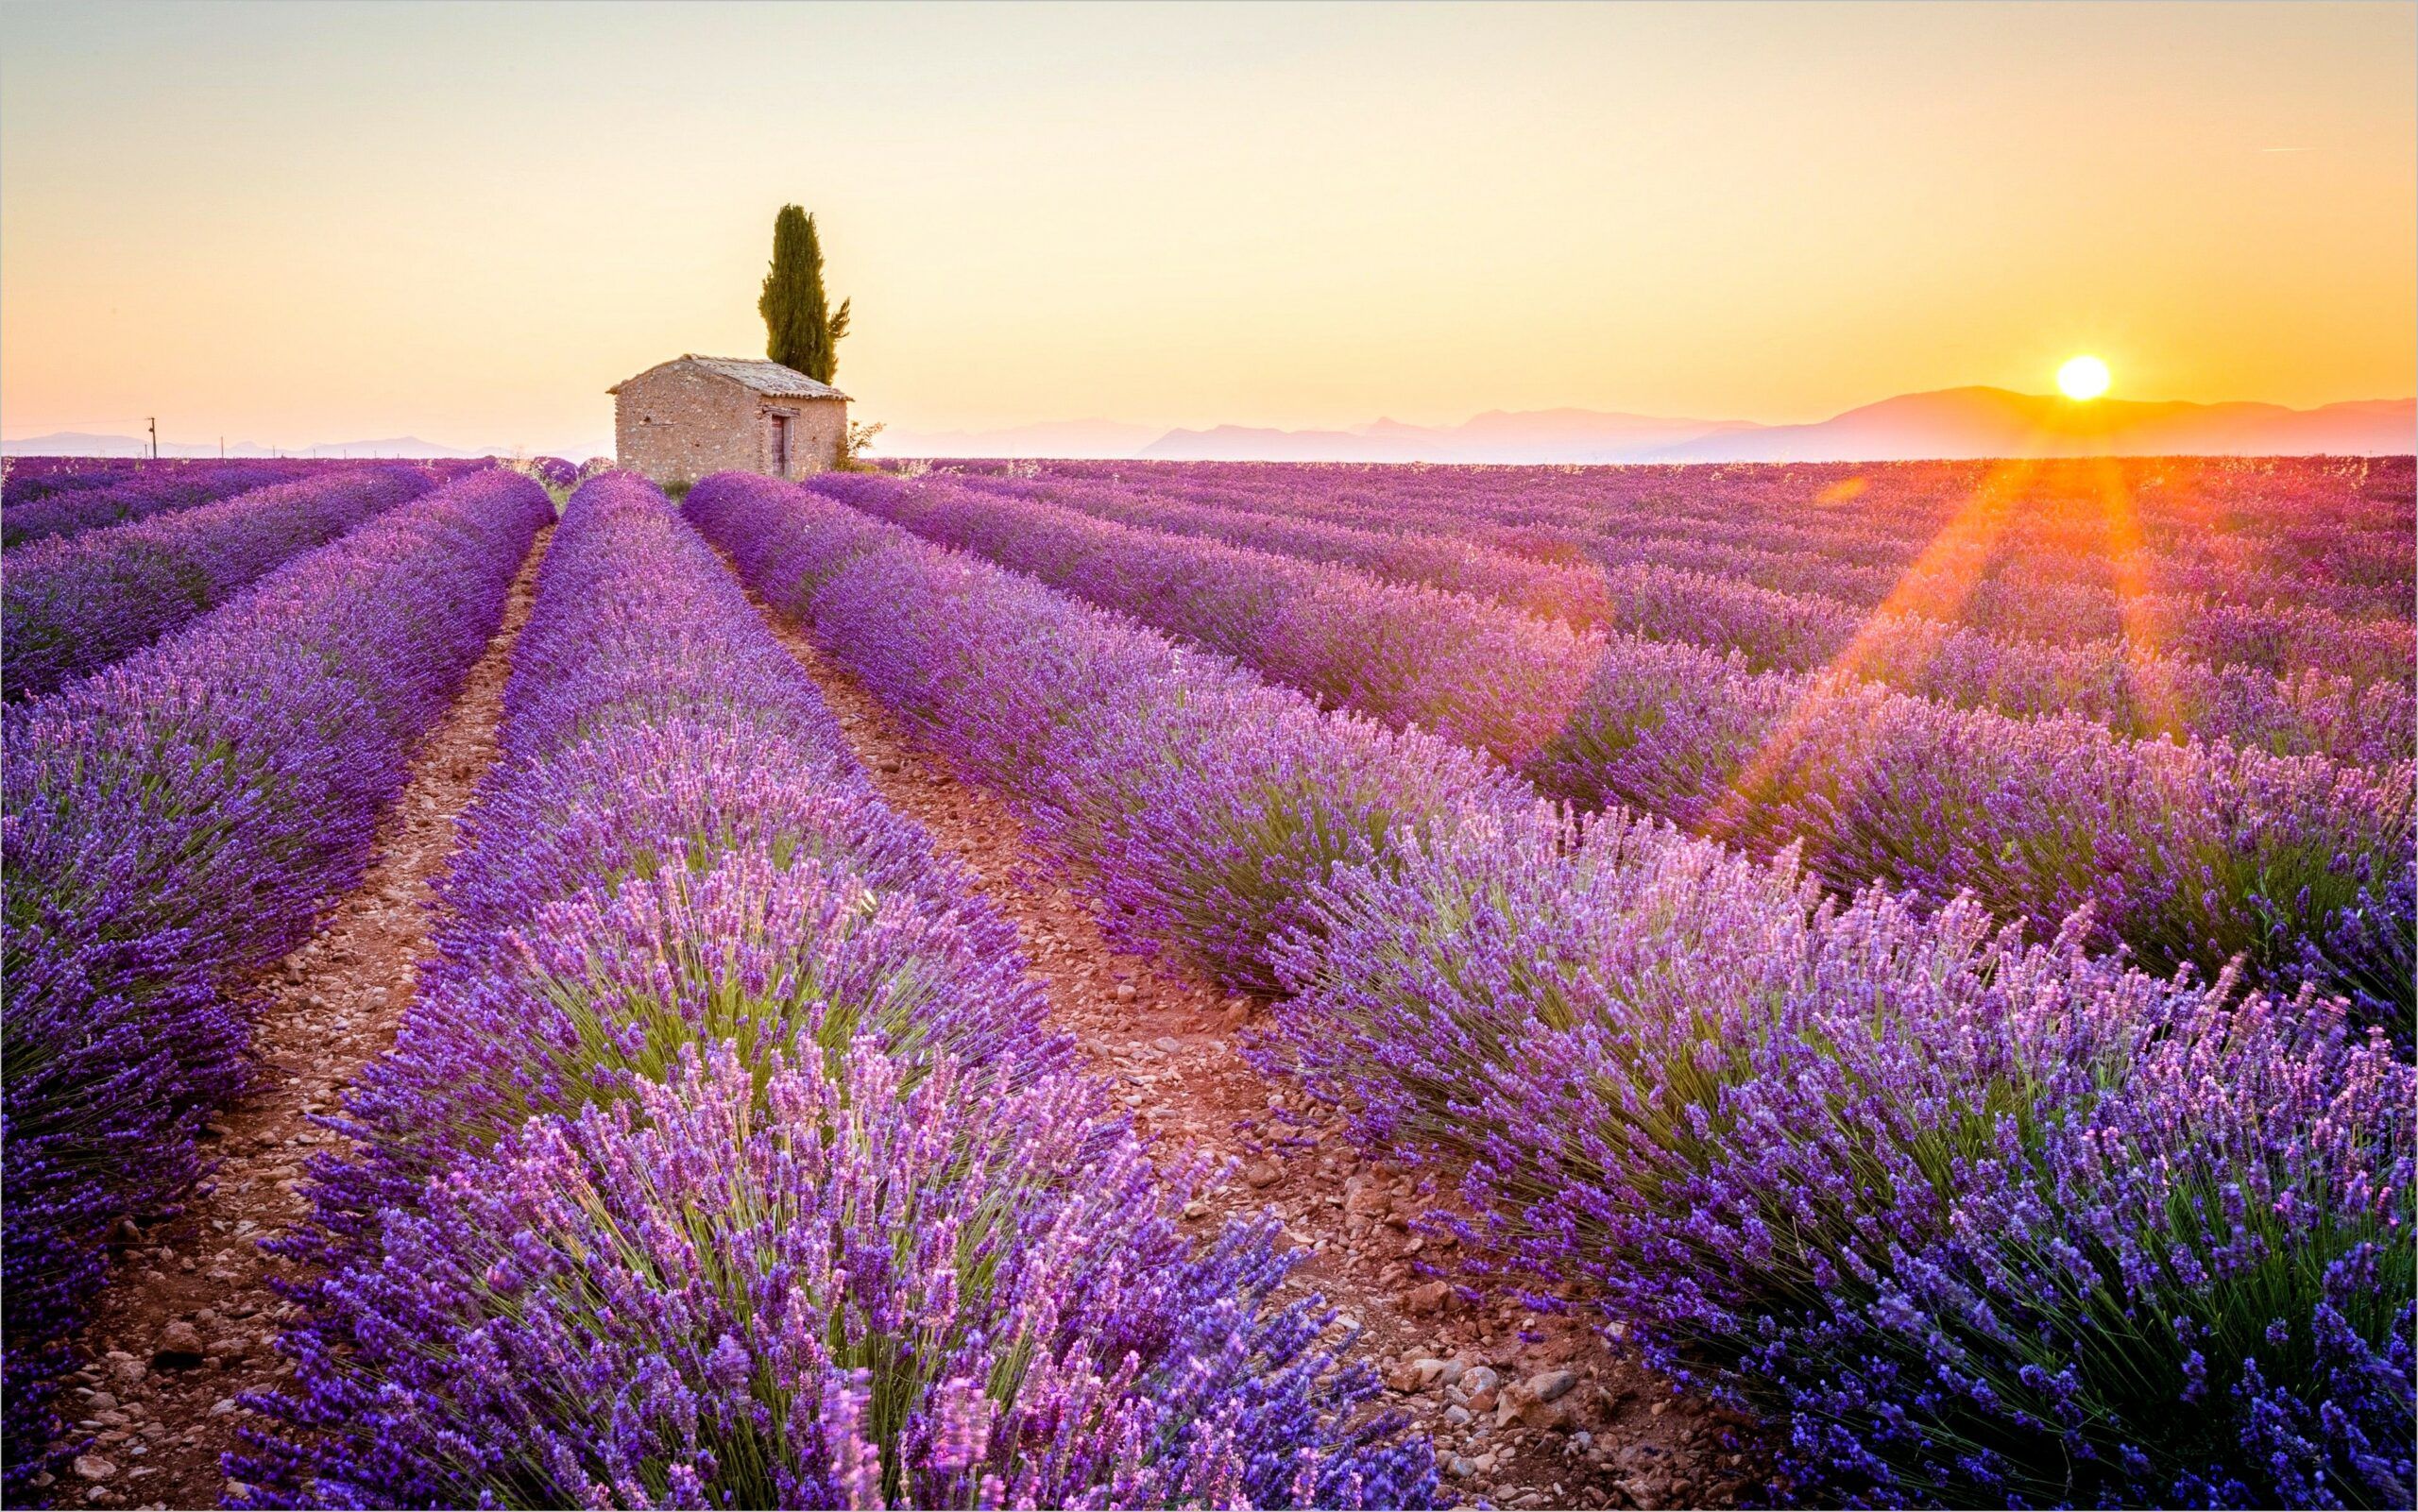 Hình nền cánh đồng hoa oải hương nổi tiếng ở Provence, Pháp sẽ đưa bạn vào một thế giới hoàn toàn khác và mang lại cho bạn cảm giác vô cùng thư thái. Hãy khám phá bộ sưu tập của chúng tôi để tìm hiểu về sự tươi trẻ và thanh lịch của vùng đất tuyệt đẹp này!